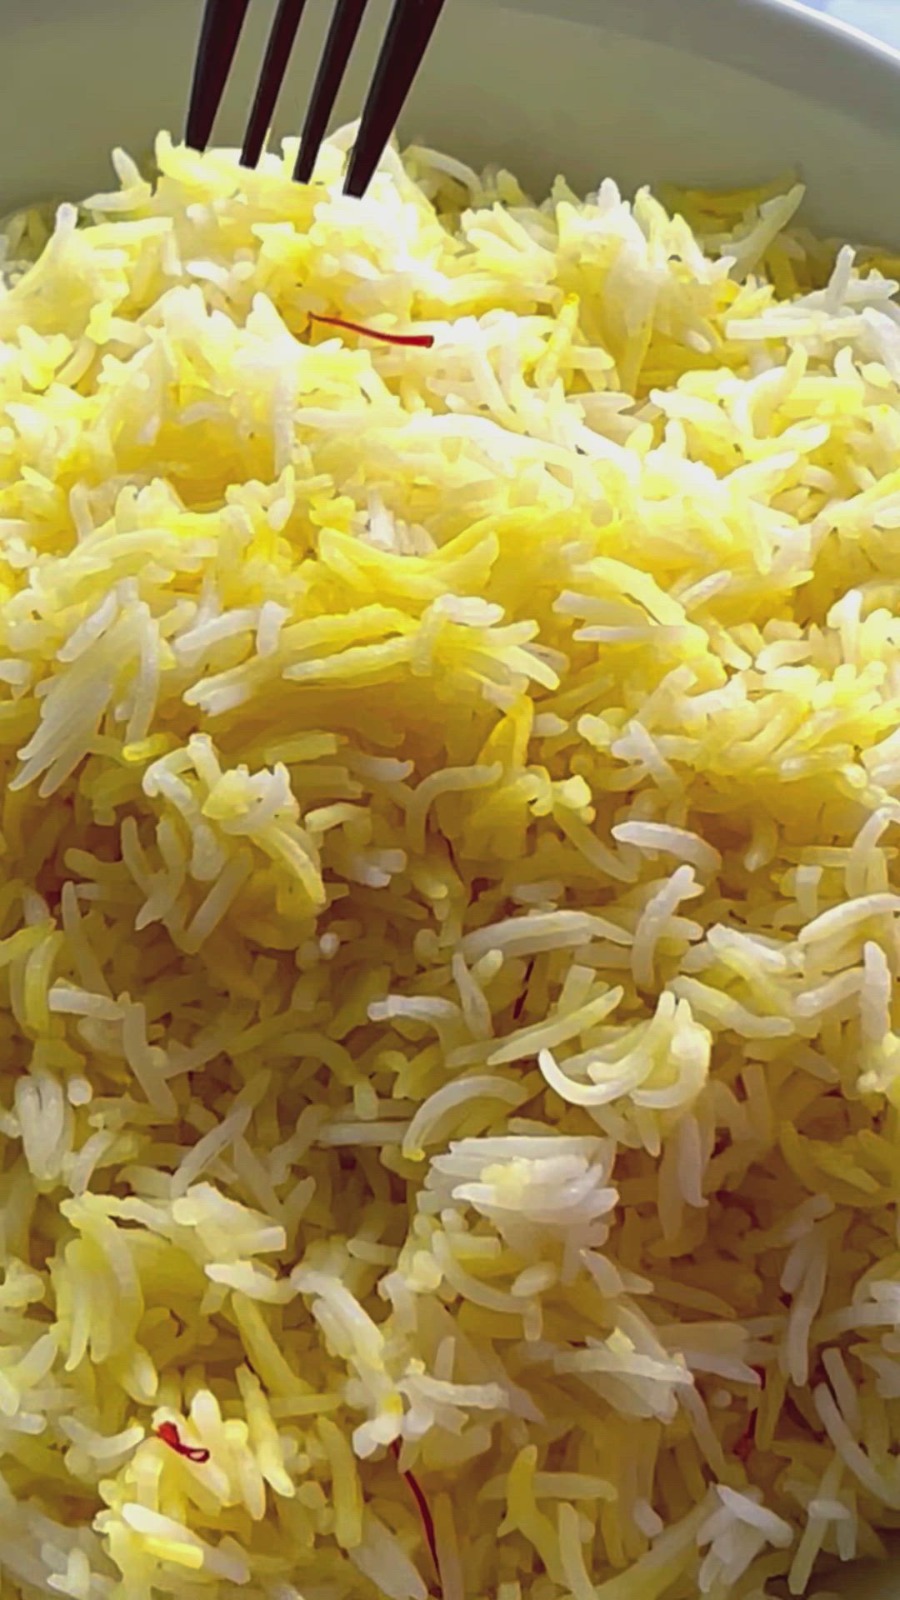 Plain Biryani Rice